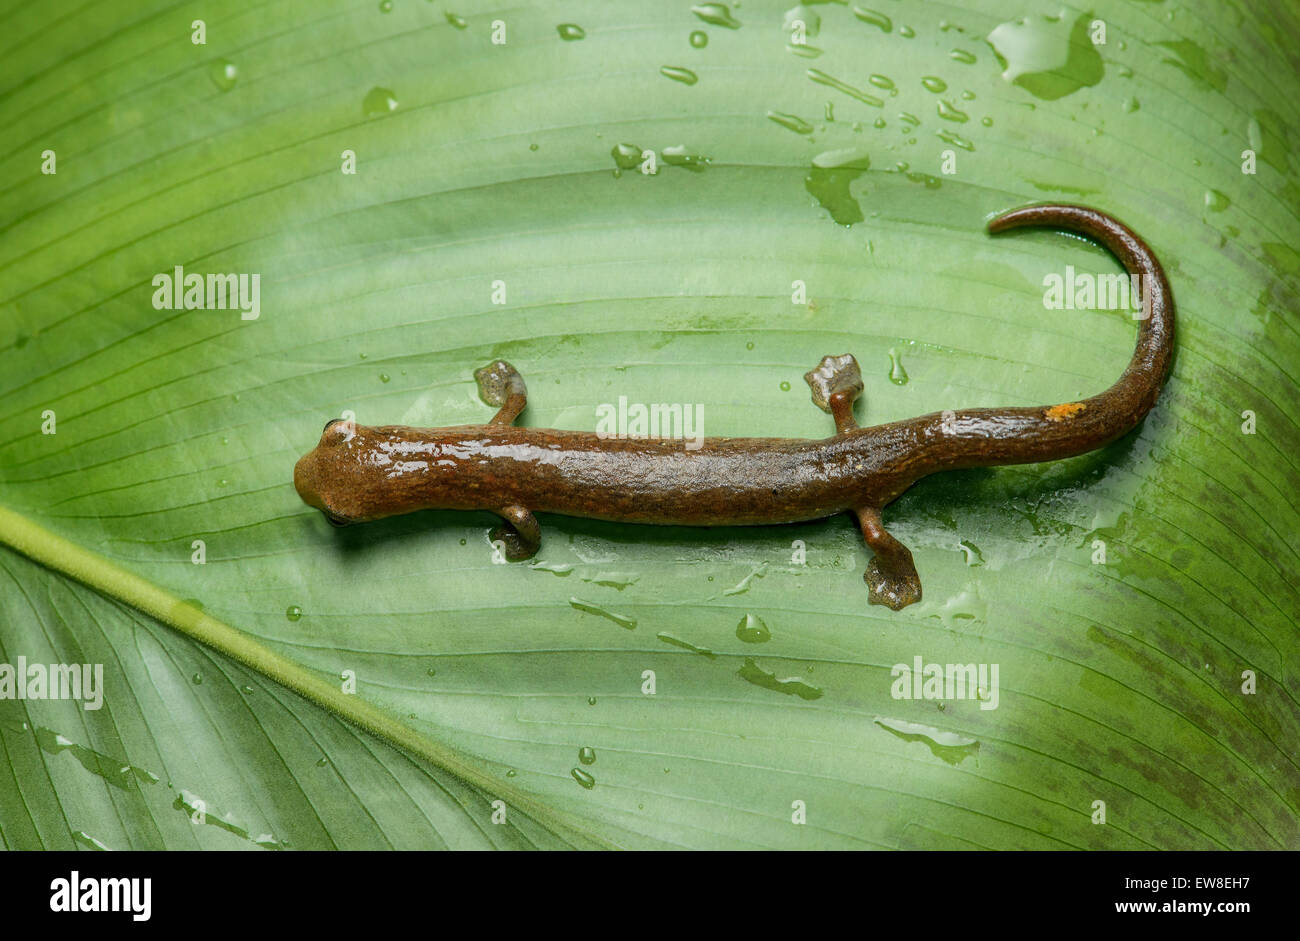 Neotropical climbing salamander (Bolitoglossa equatoriana), Choco rainforest, Ecuador Stock Photo